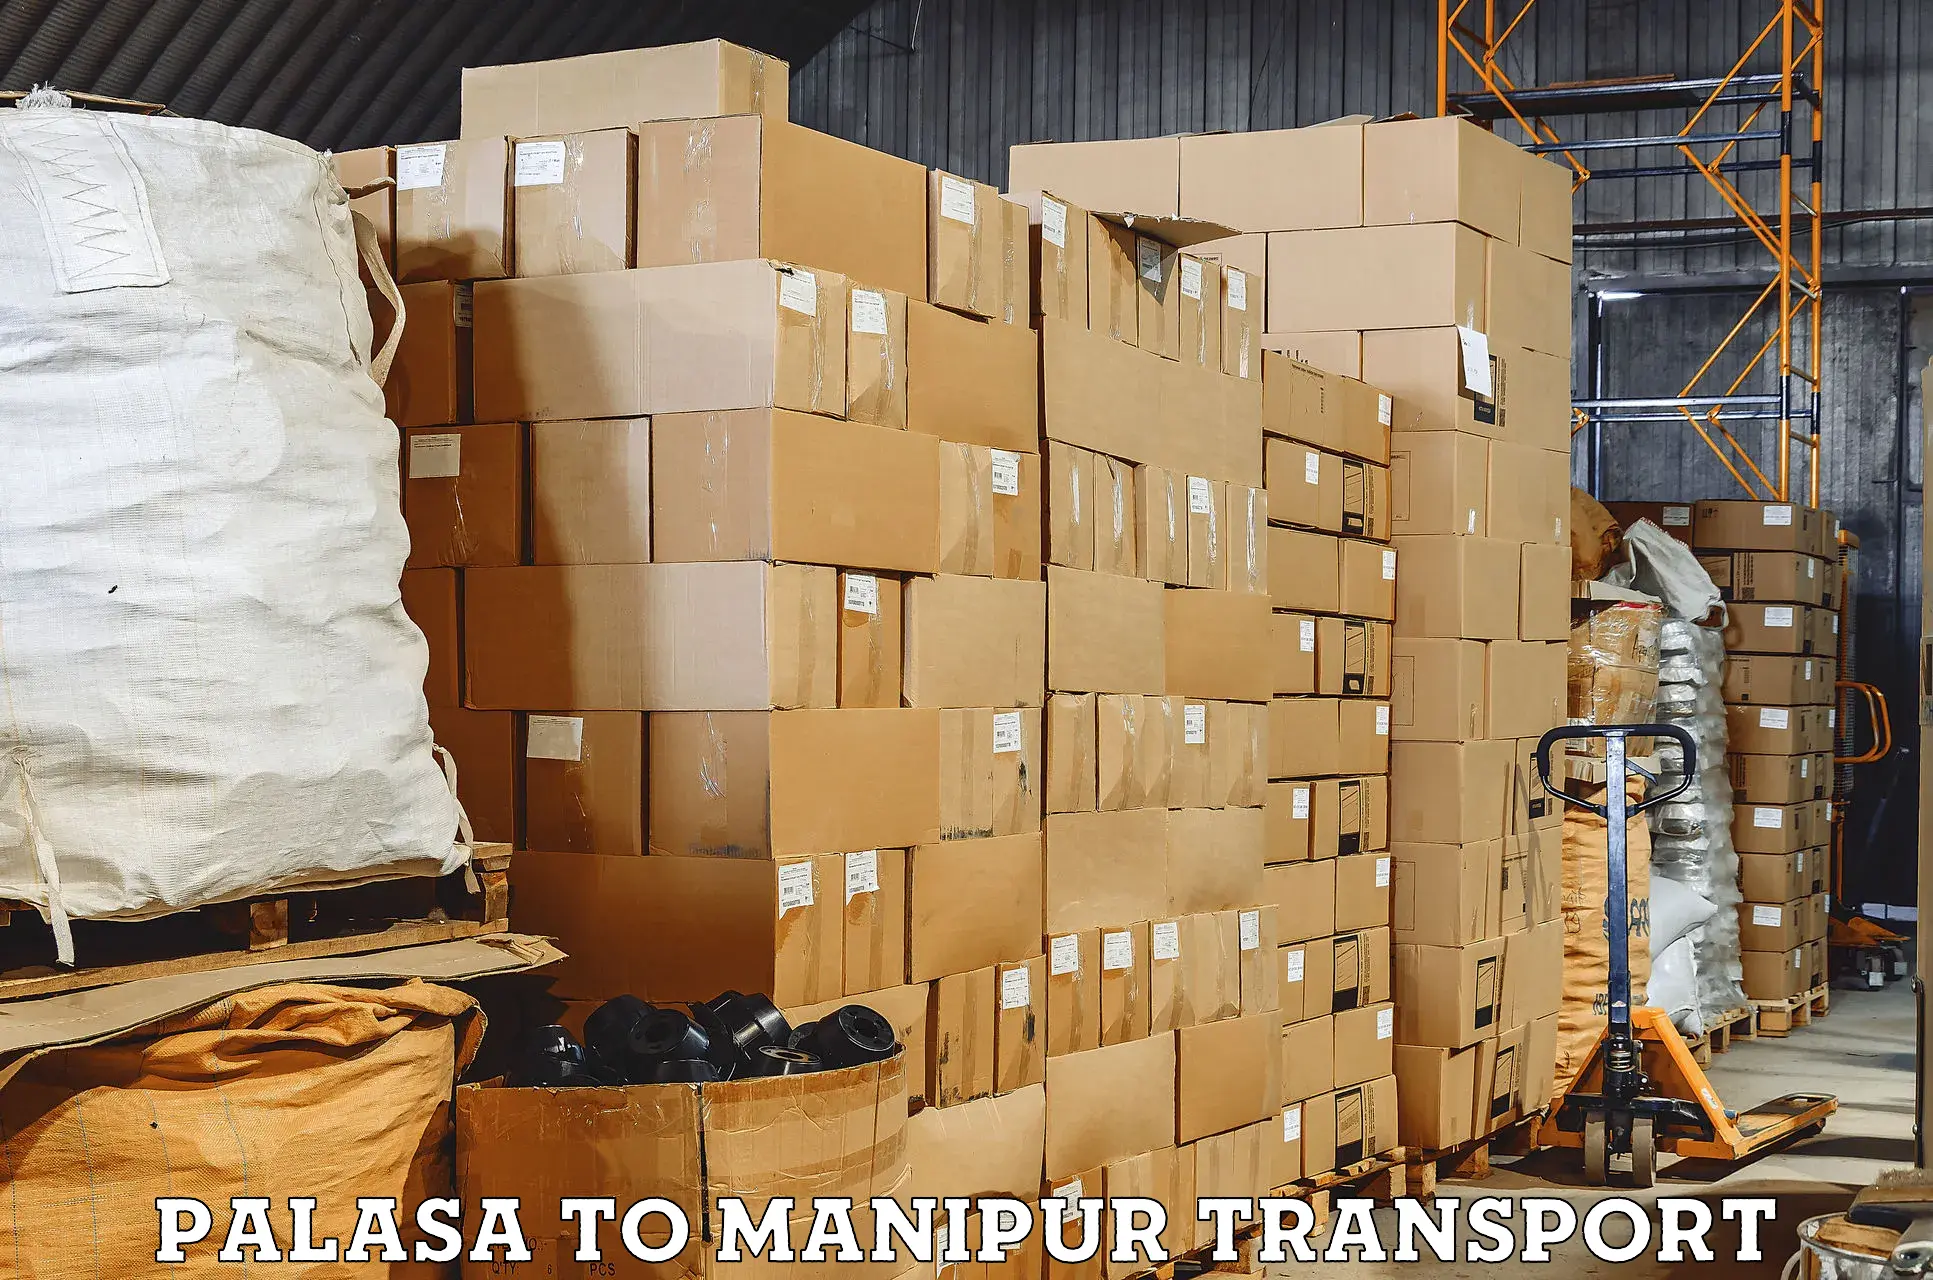 Two wheeler parcel service Palasa to Manipur